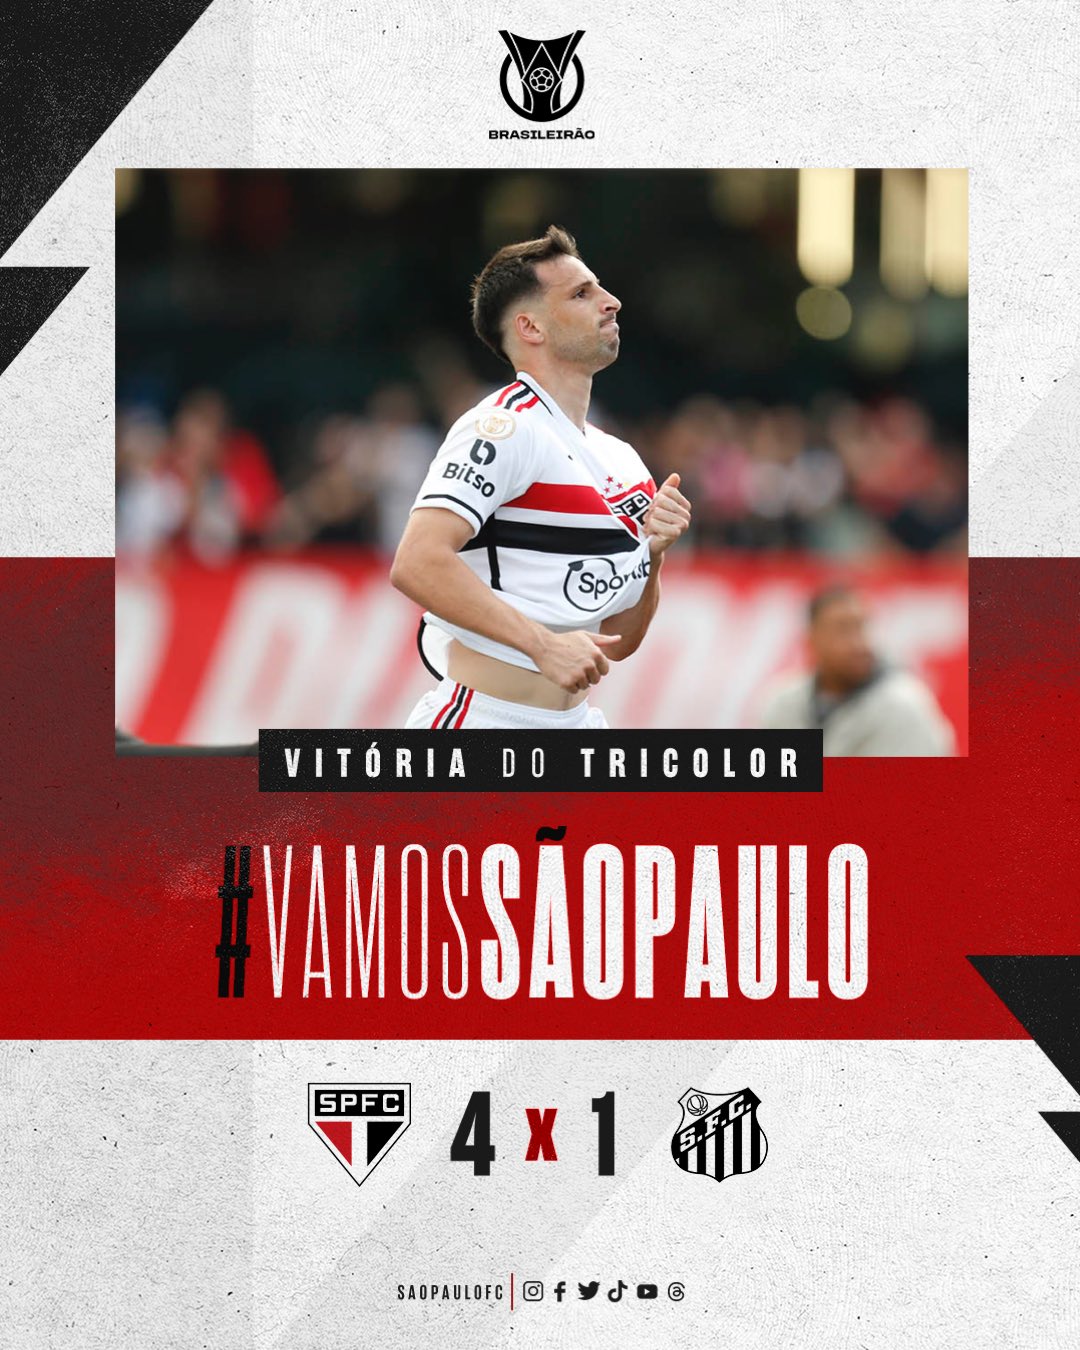 São Paulo FC - Vamos aquecer para o clássico deste domingo com um